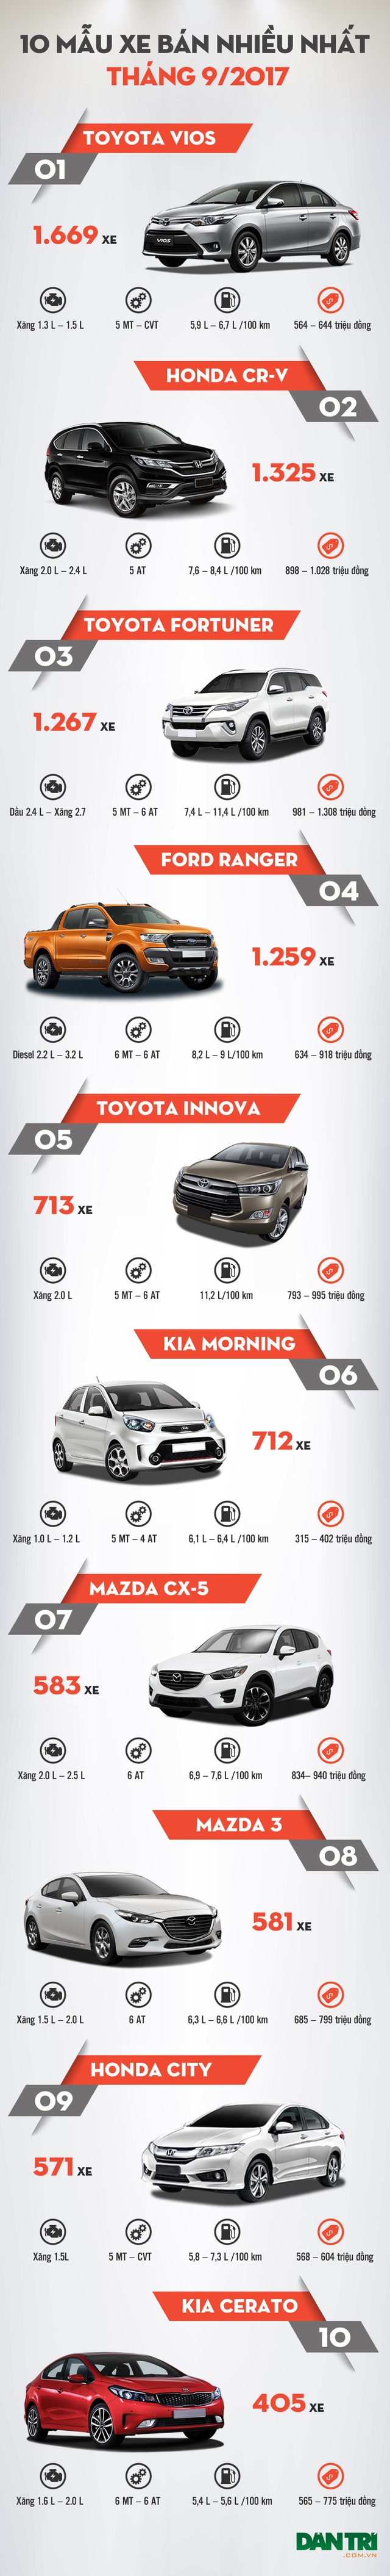 [Infographics]-Top 10 mẫu xe bán nhiều tháng 9/2017 - 1